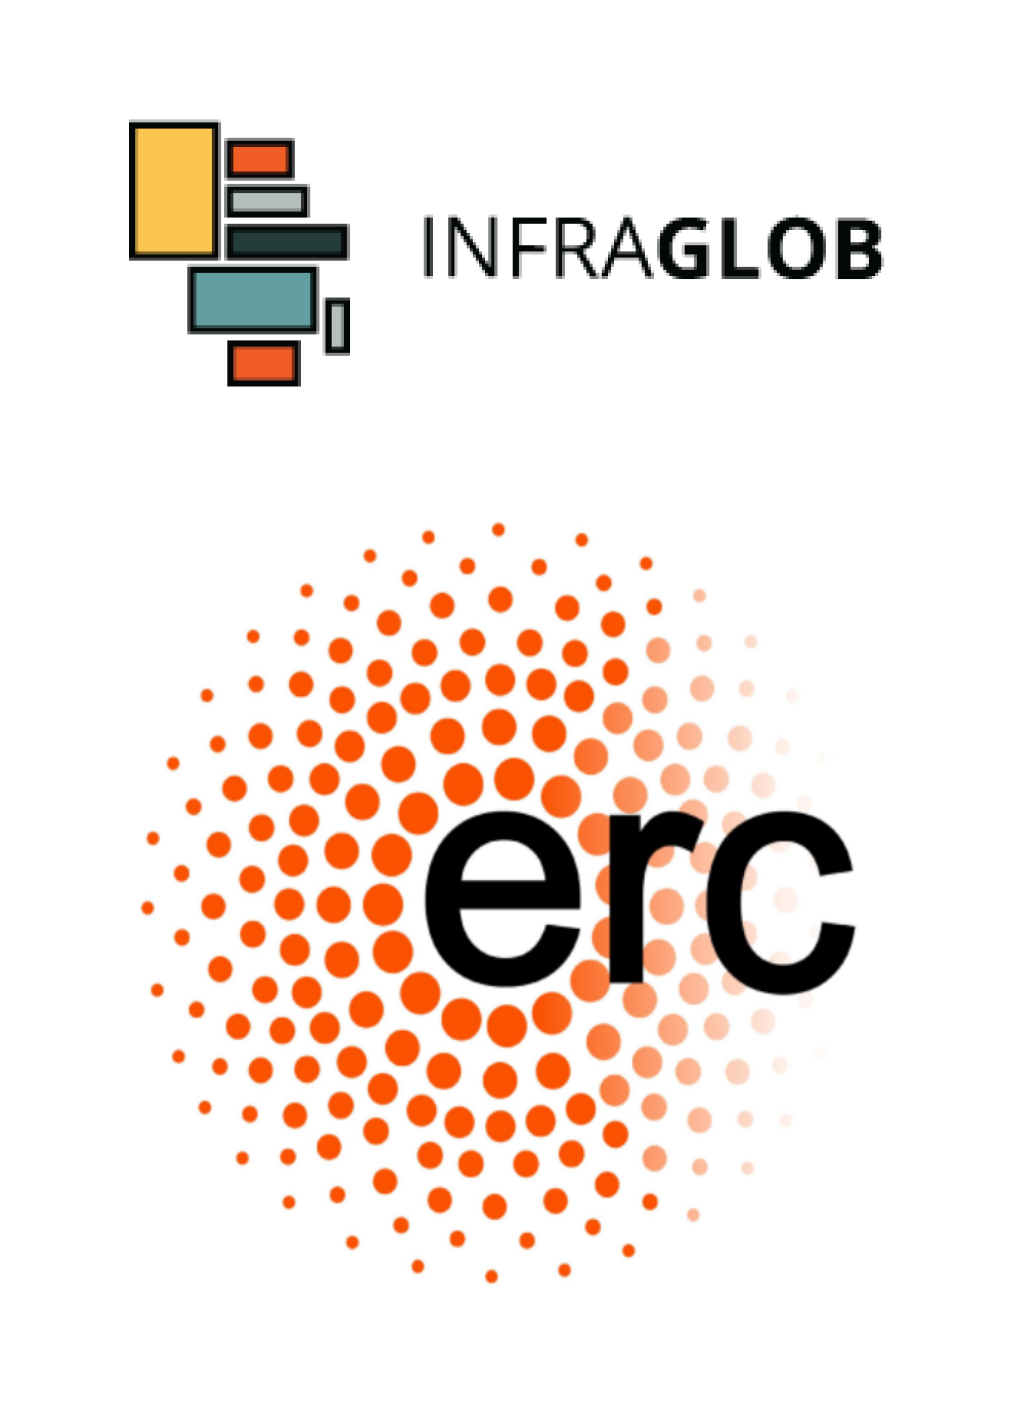 Infraglob logo